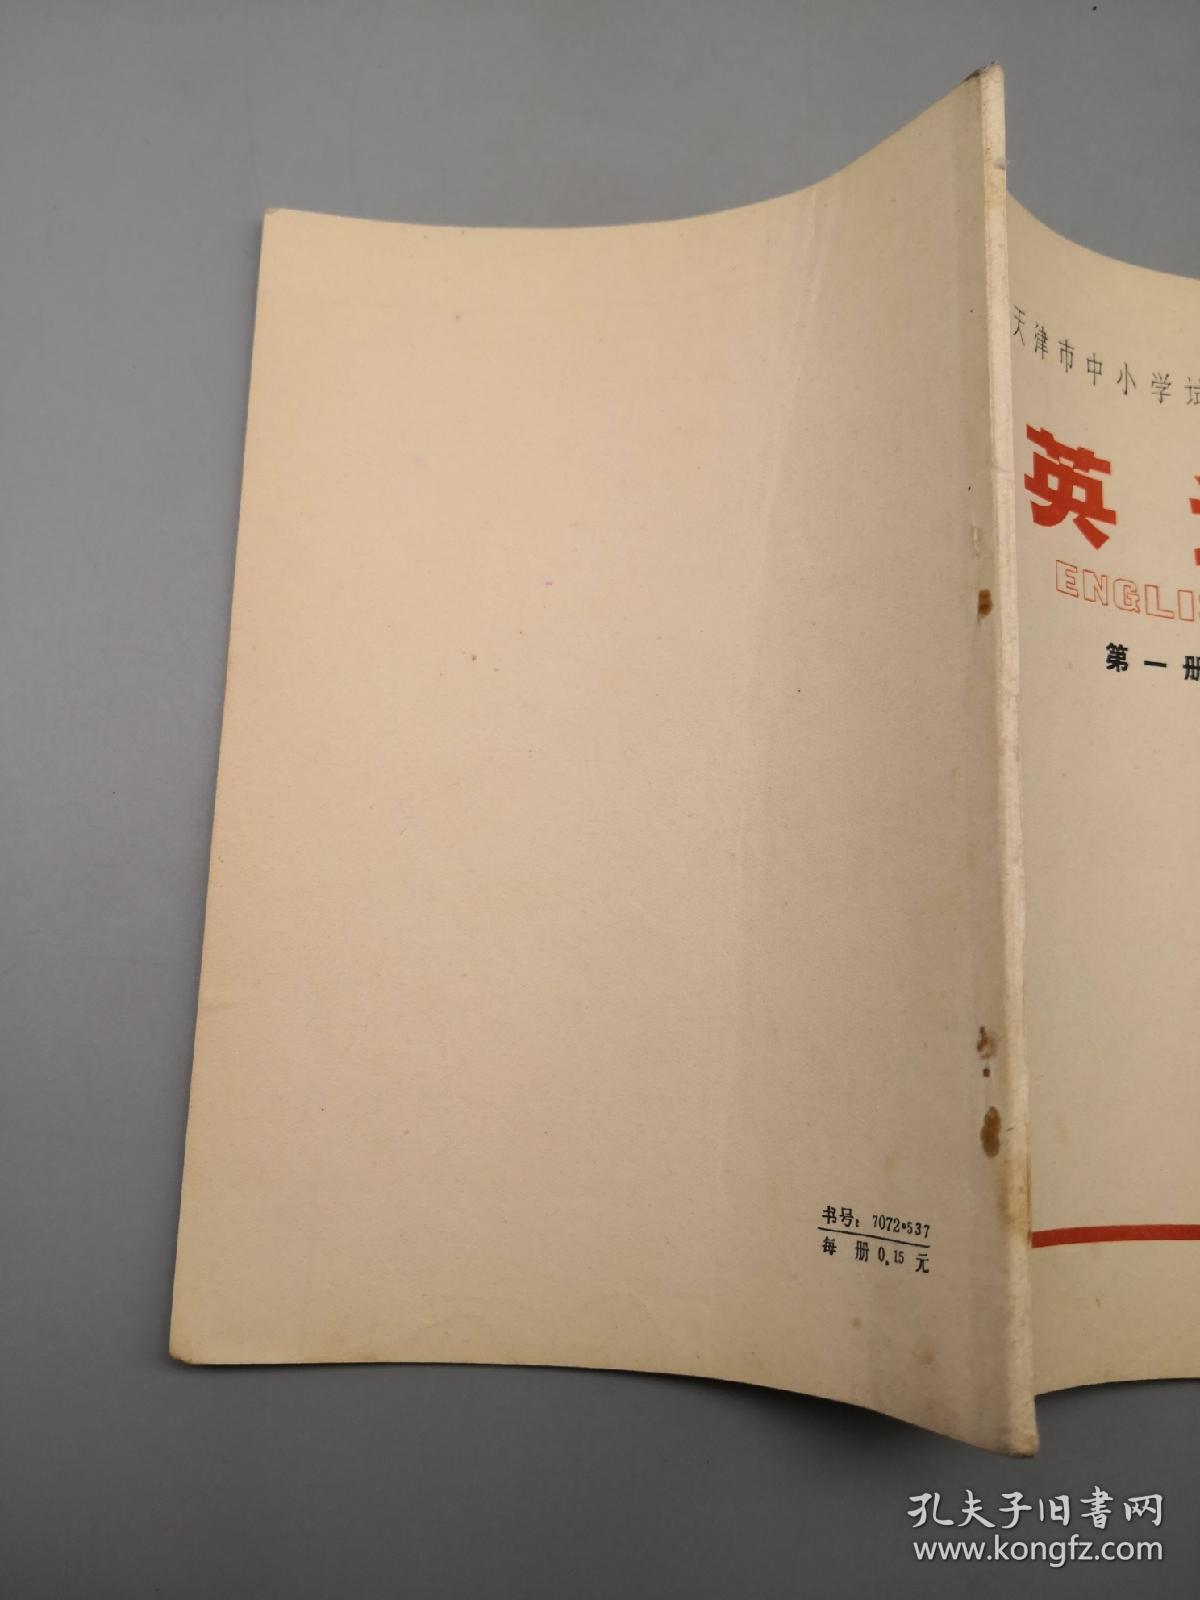 天津市中小学试用课本 英语 第一册（1971年一版二印）